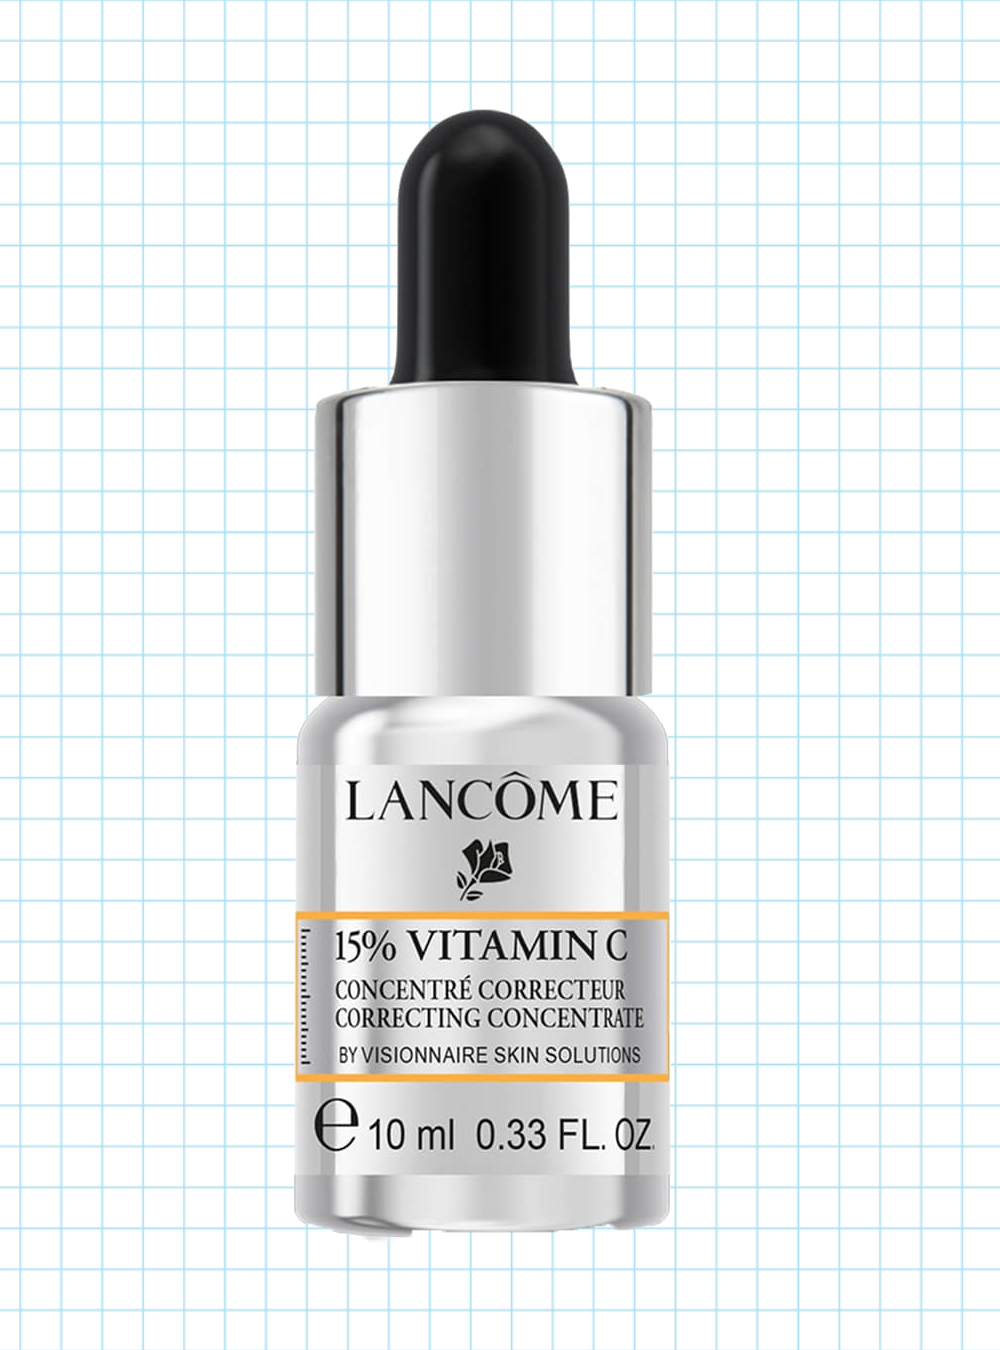 Lancôme Visionnaire Skin Solutions 15 Vitamin C